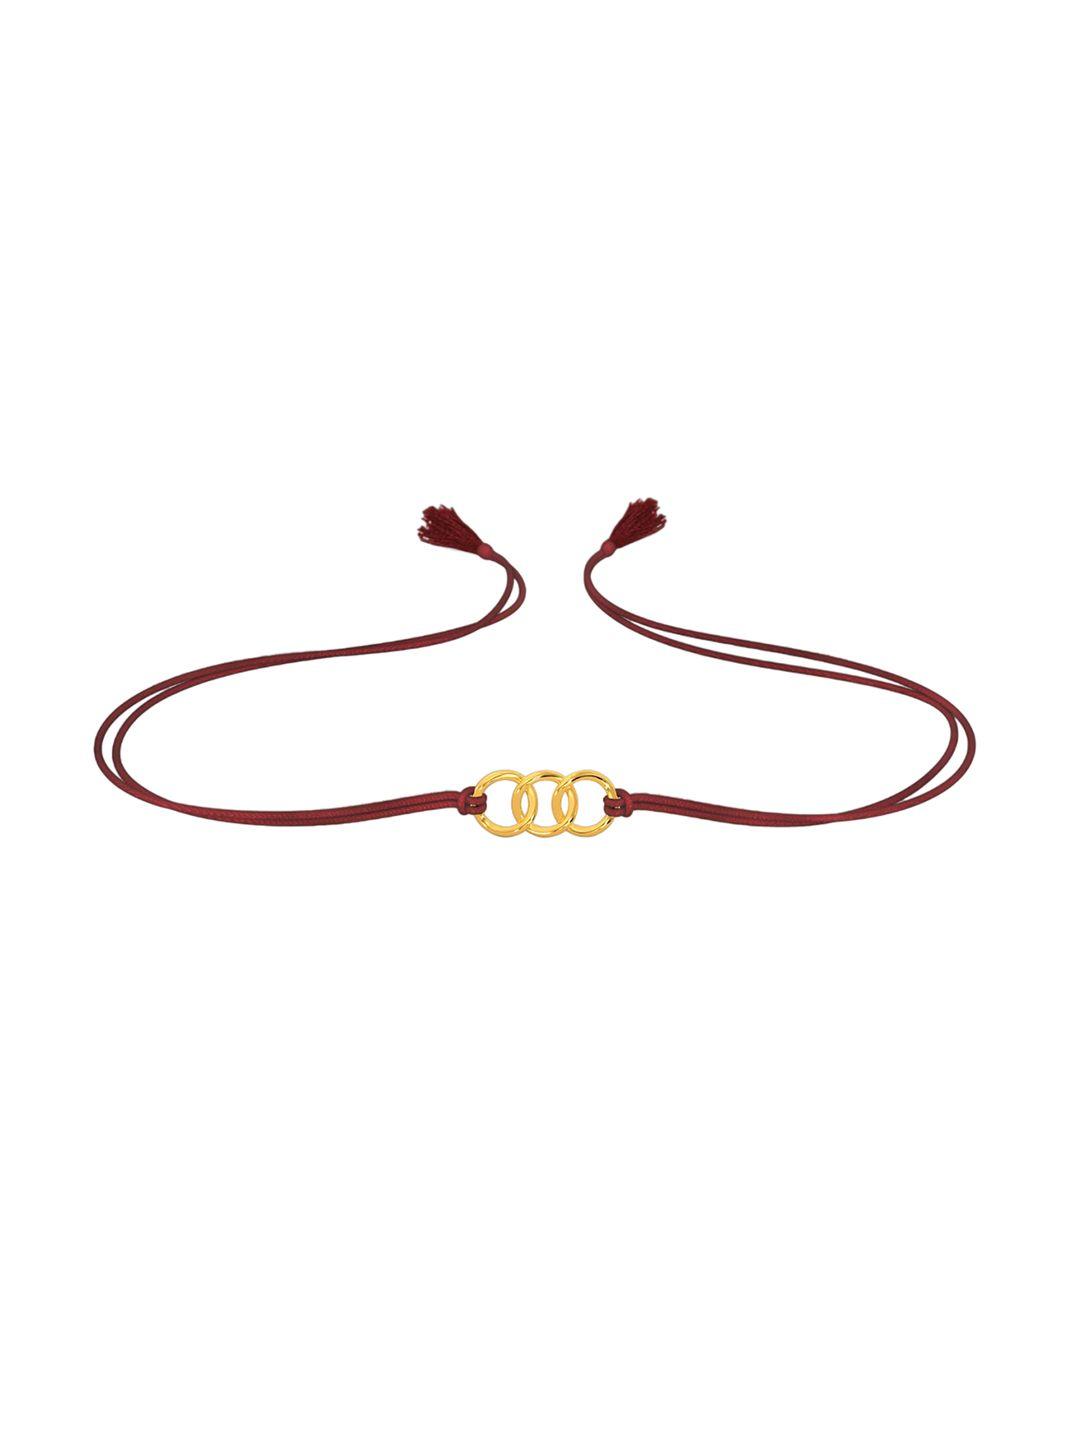 melorra-18kt-divine-bond-bracelets-rakhi-gold